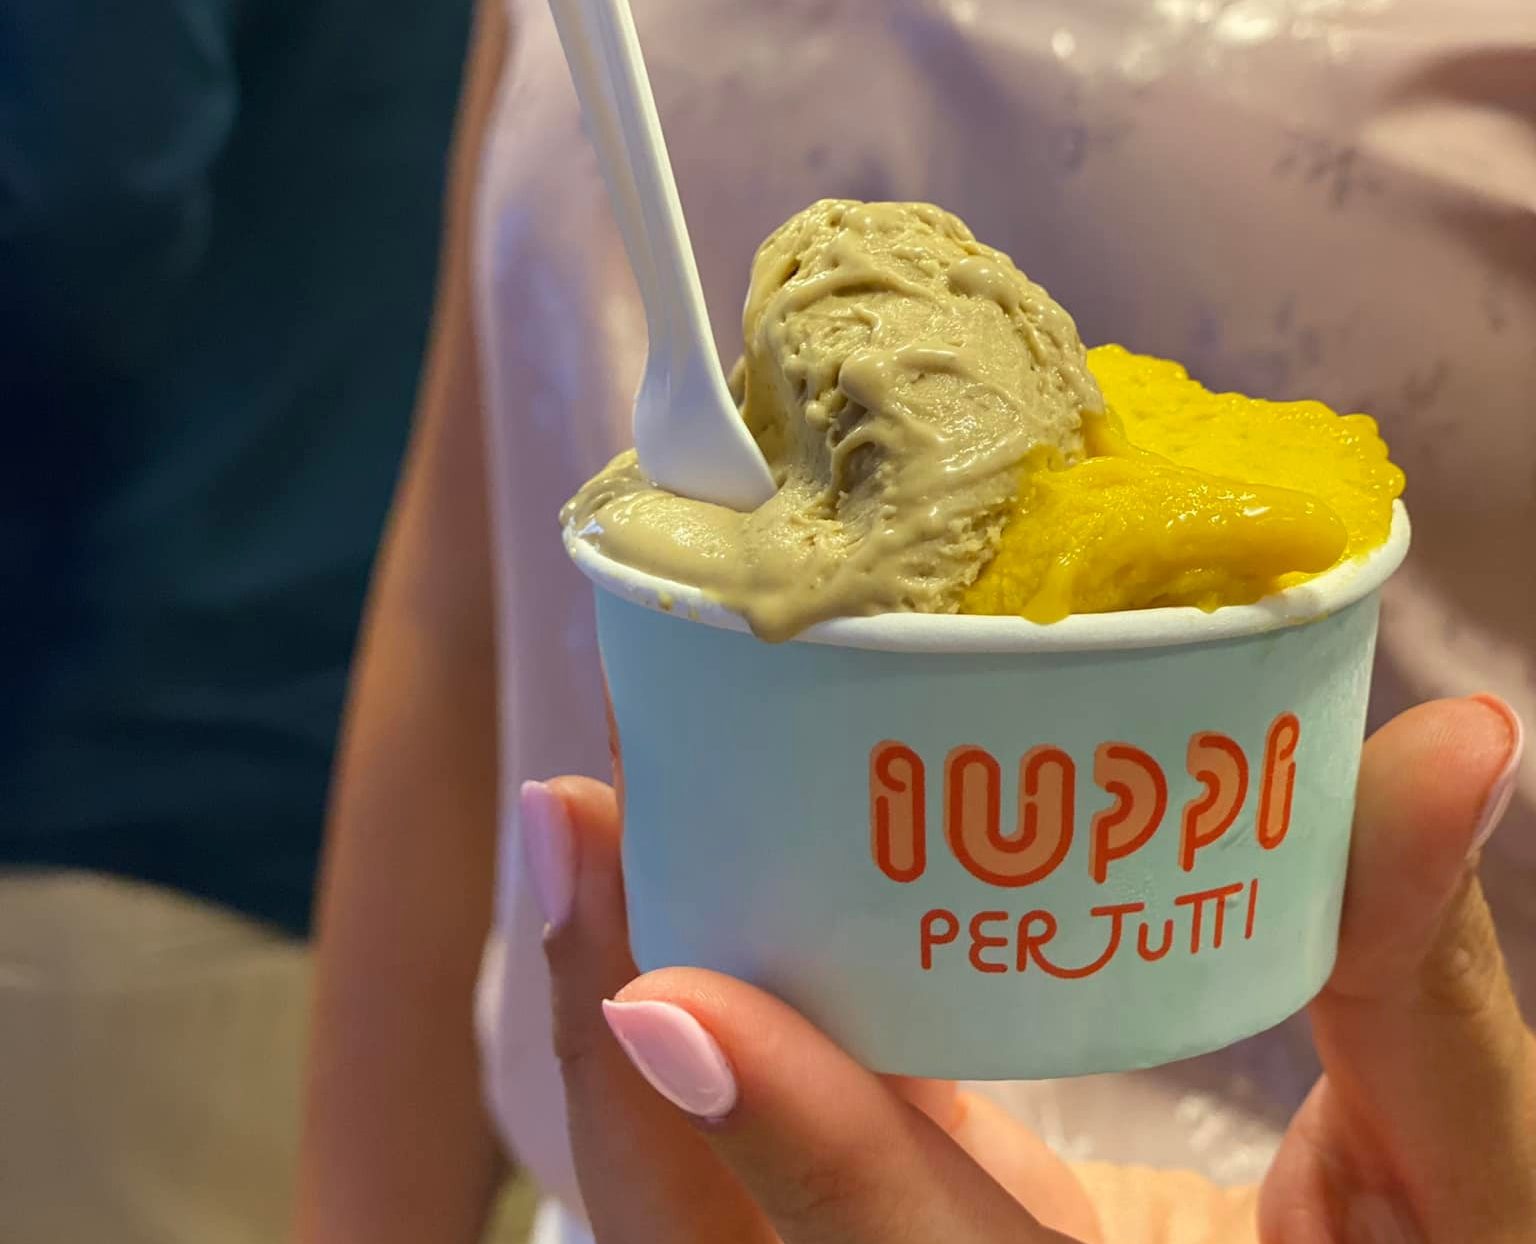 Coppetta di gelato IUPPI per tutti a base di legumi fermentati, gusti colore verde e giallo (pistacchio e mango?)